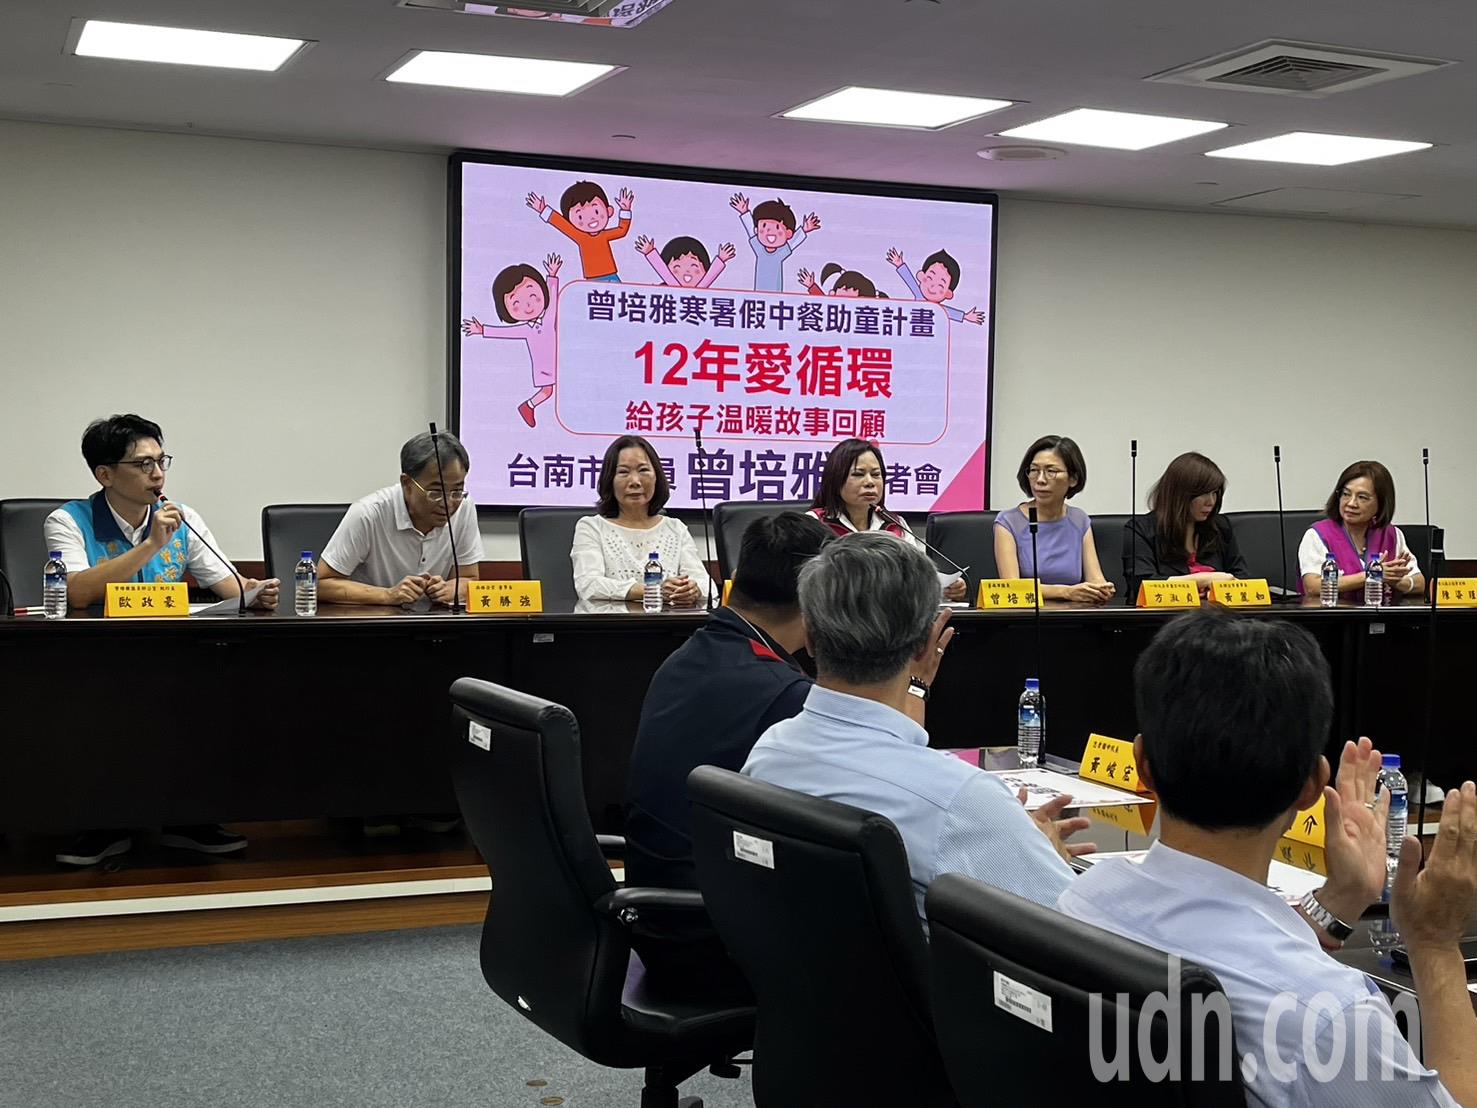 台南市议员曾培雅爱心义工协会「暑假助童计划」迈入第12年，今年暑假将有330位学童受惠。记者吴淑玲／摄影